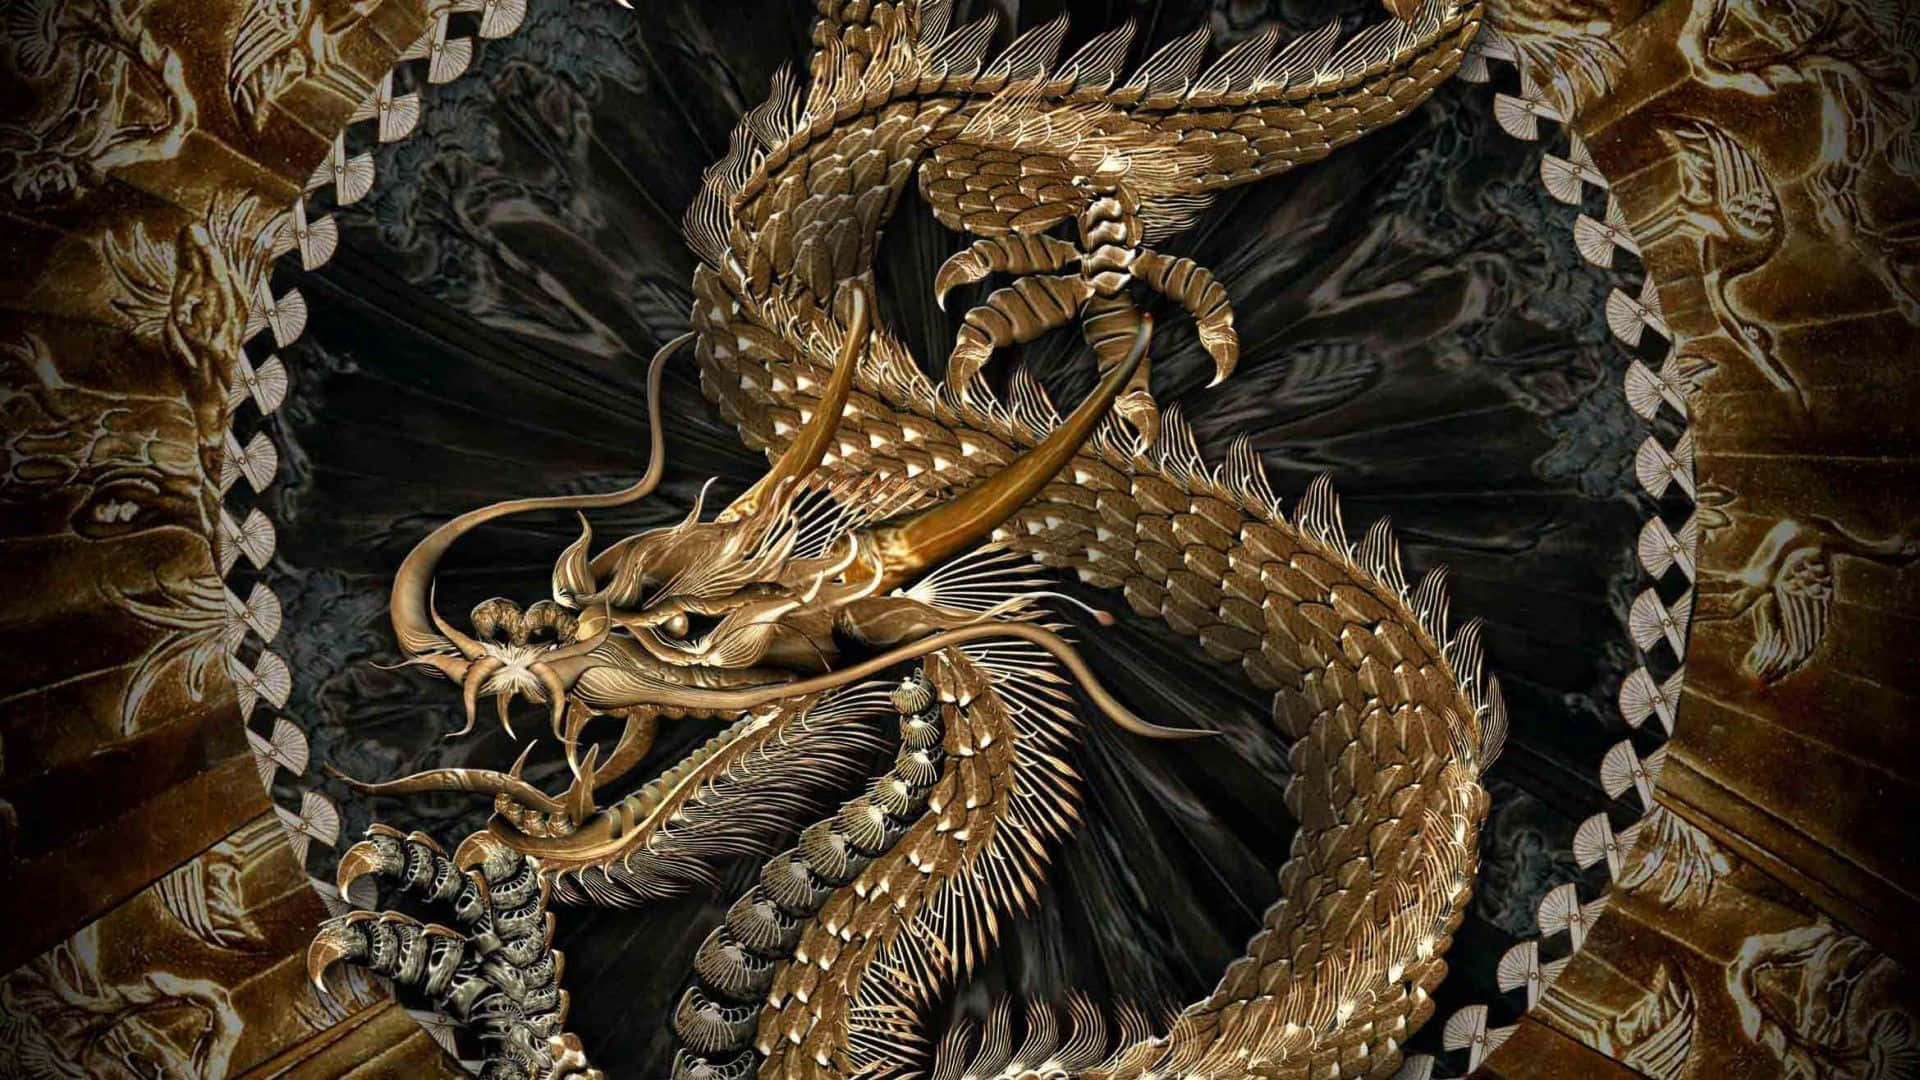 1080p Dragon Wallpaper